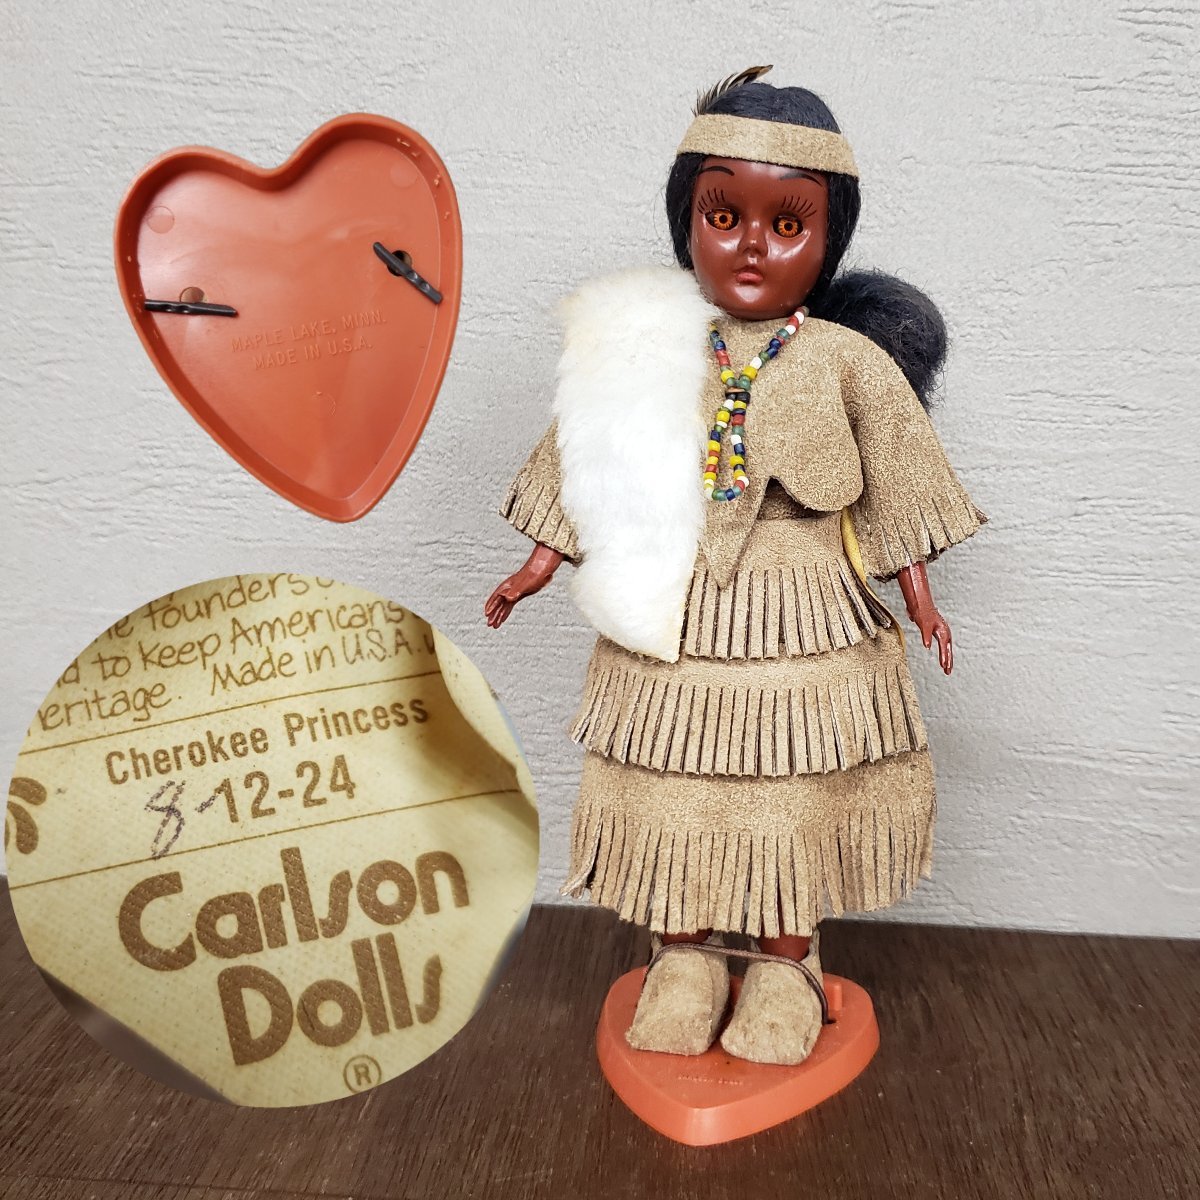 カールソンドール　インディアン人形　ヴィンテージ　アンティーク　まばたき人形　ネイティブアメリカ　8-12-24　CarlsonDolls 【60a828】_画像1